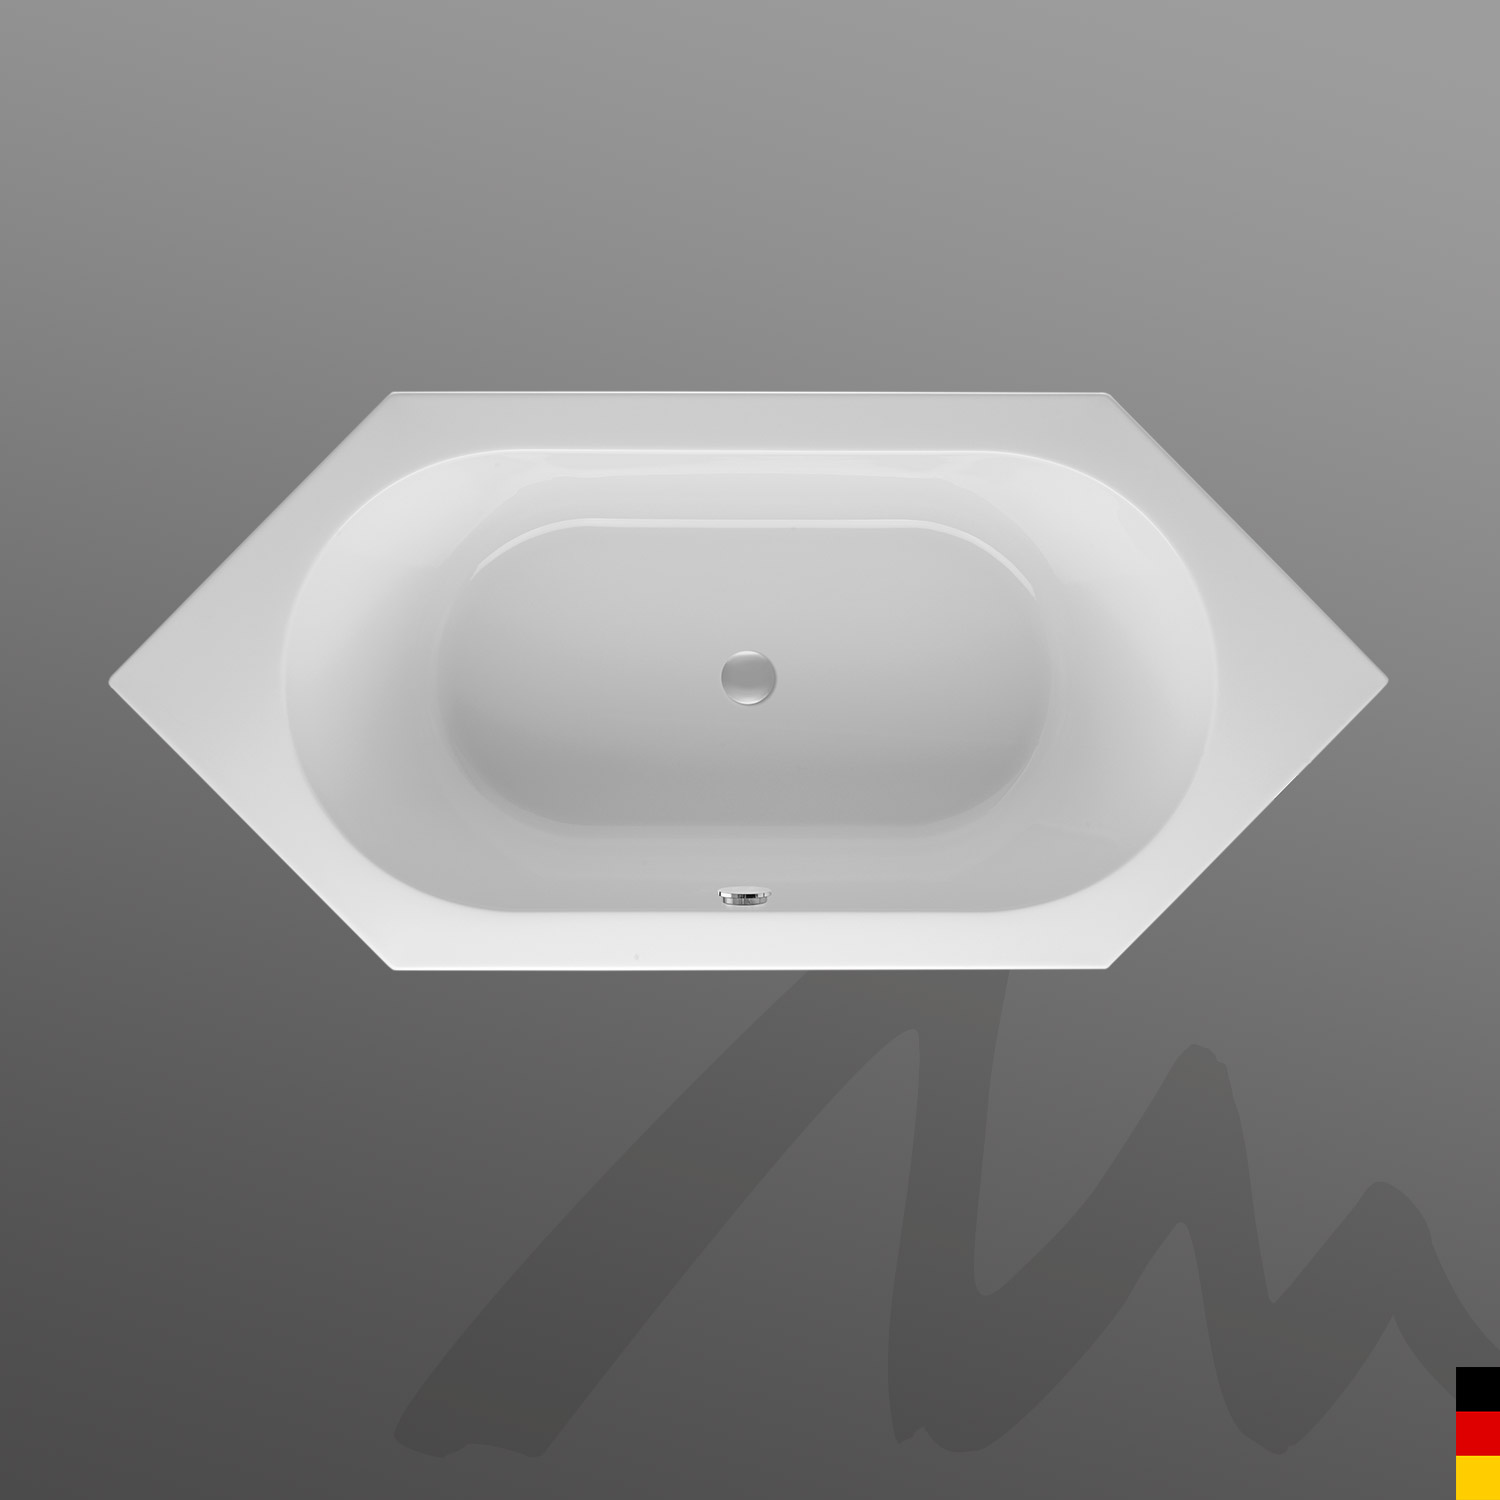 Mauersberger Badewanne 6-Eck Ovata 190/85  190x85x45cm  Farbe:rein-weiß